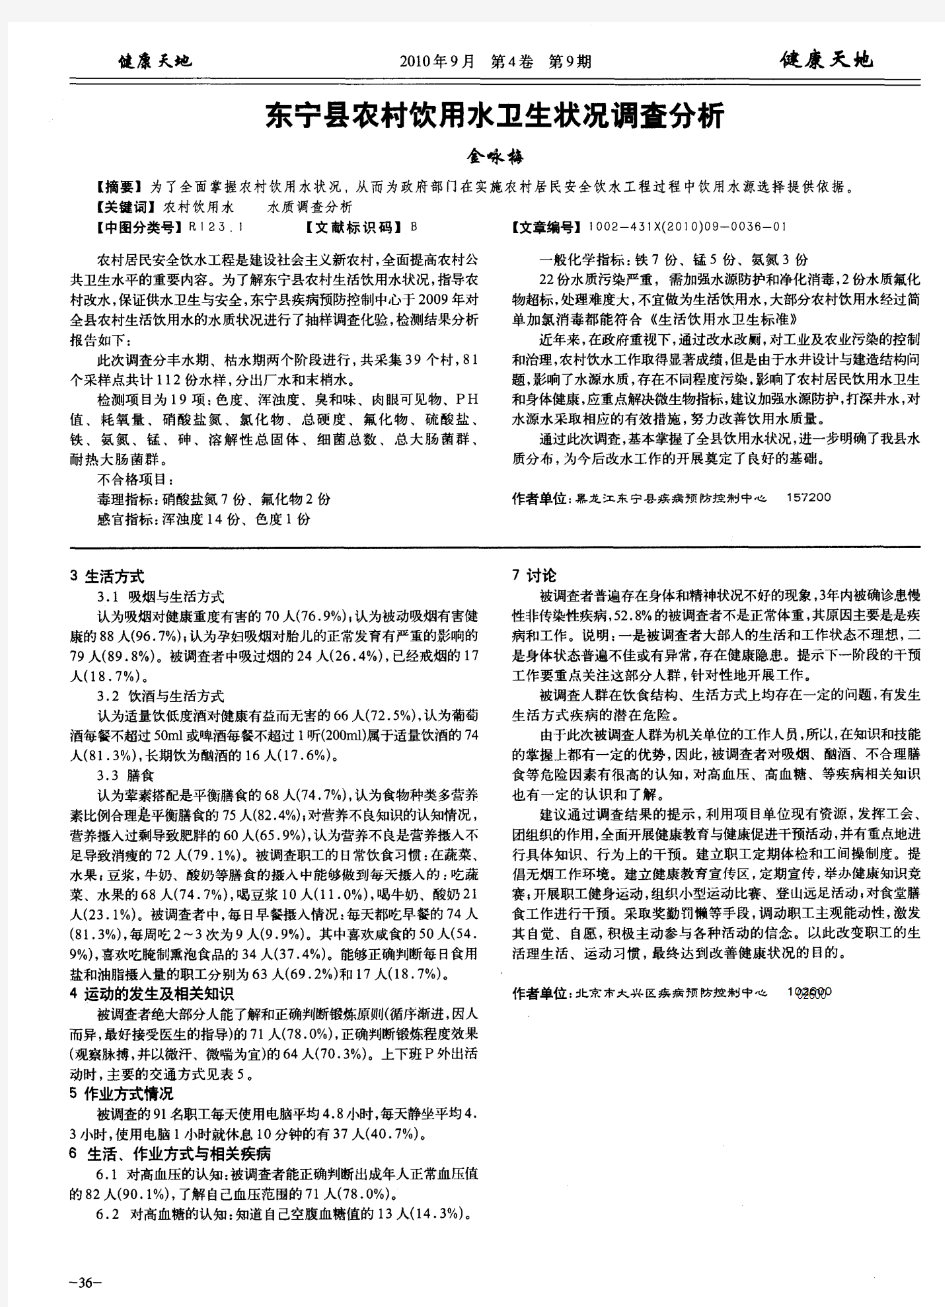 东宁县农村饮用水卫生状况调查分析